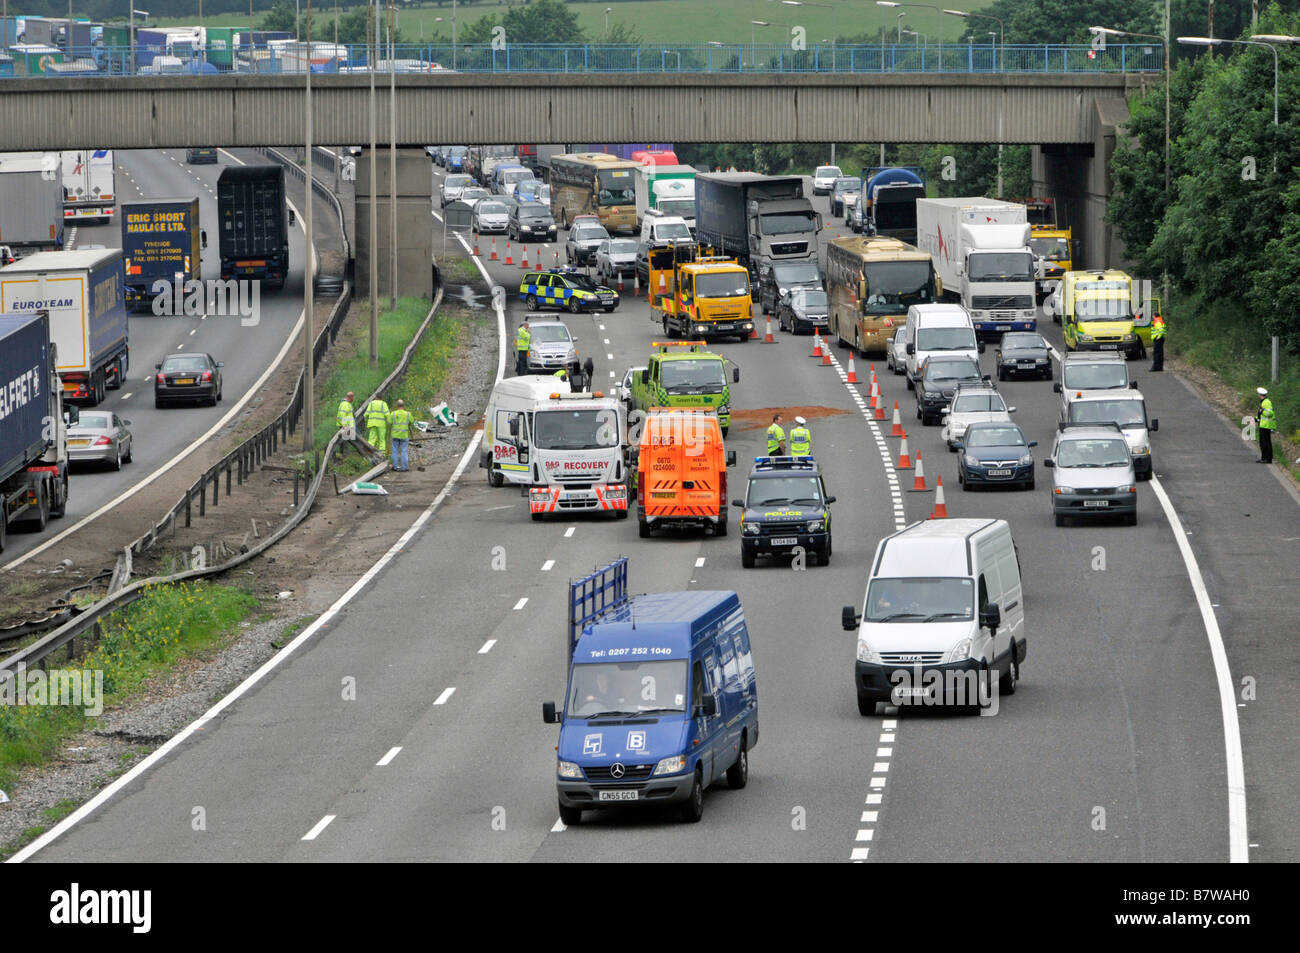 Luftaufnahme M25 Autobahn Schlange von verzögerten langsam fahrenden Auto LKW-Verkehr vorbei Straßenverkehr Unfall mit Polizei & Recovery-Fahrzeuge England Stockfoto